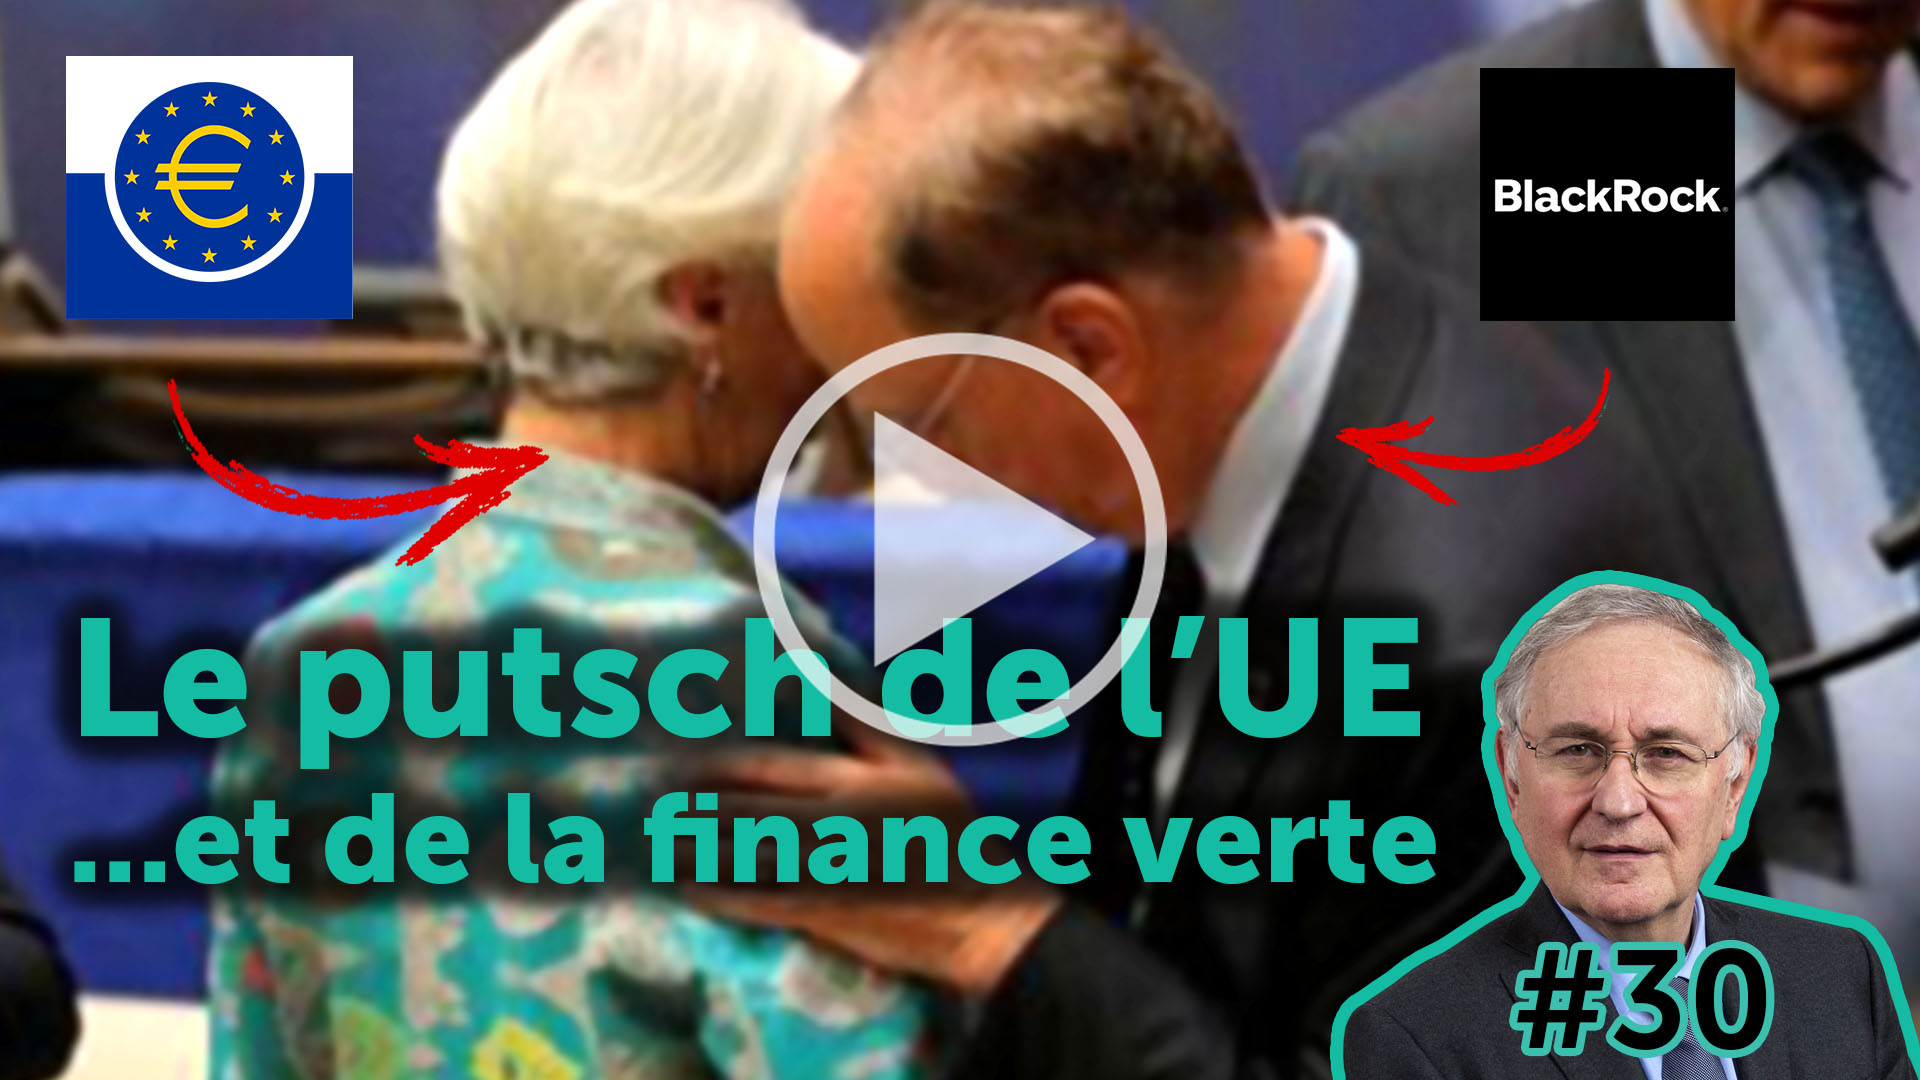 Le putsch de l’UE... et de la finance verte - EJC #30